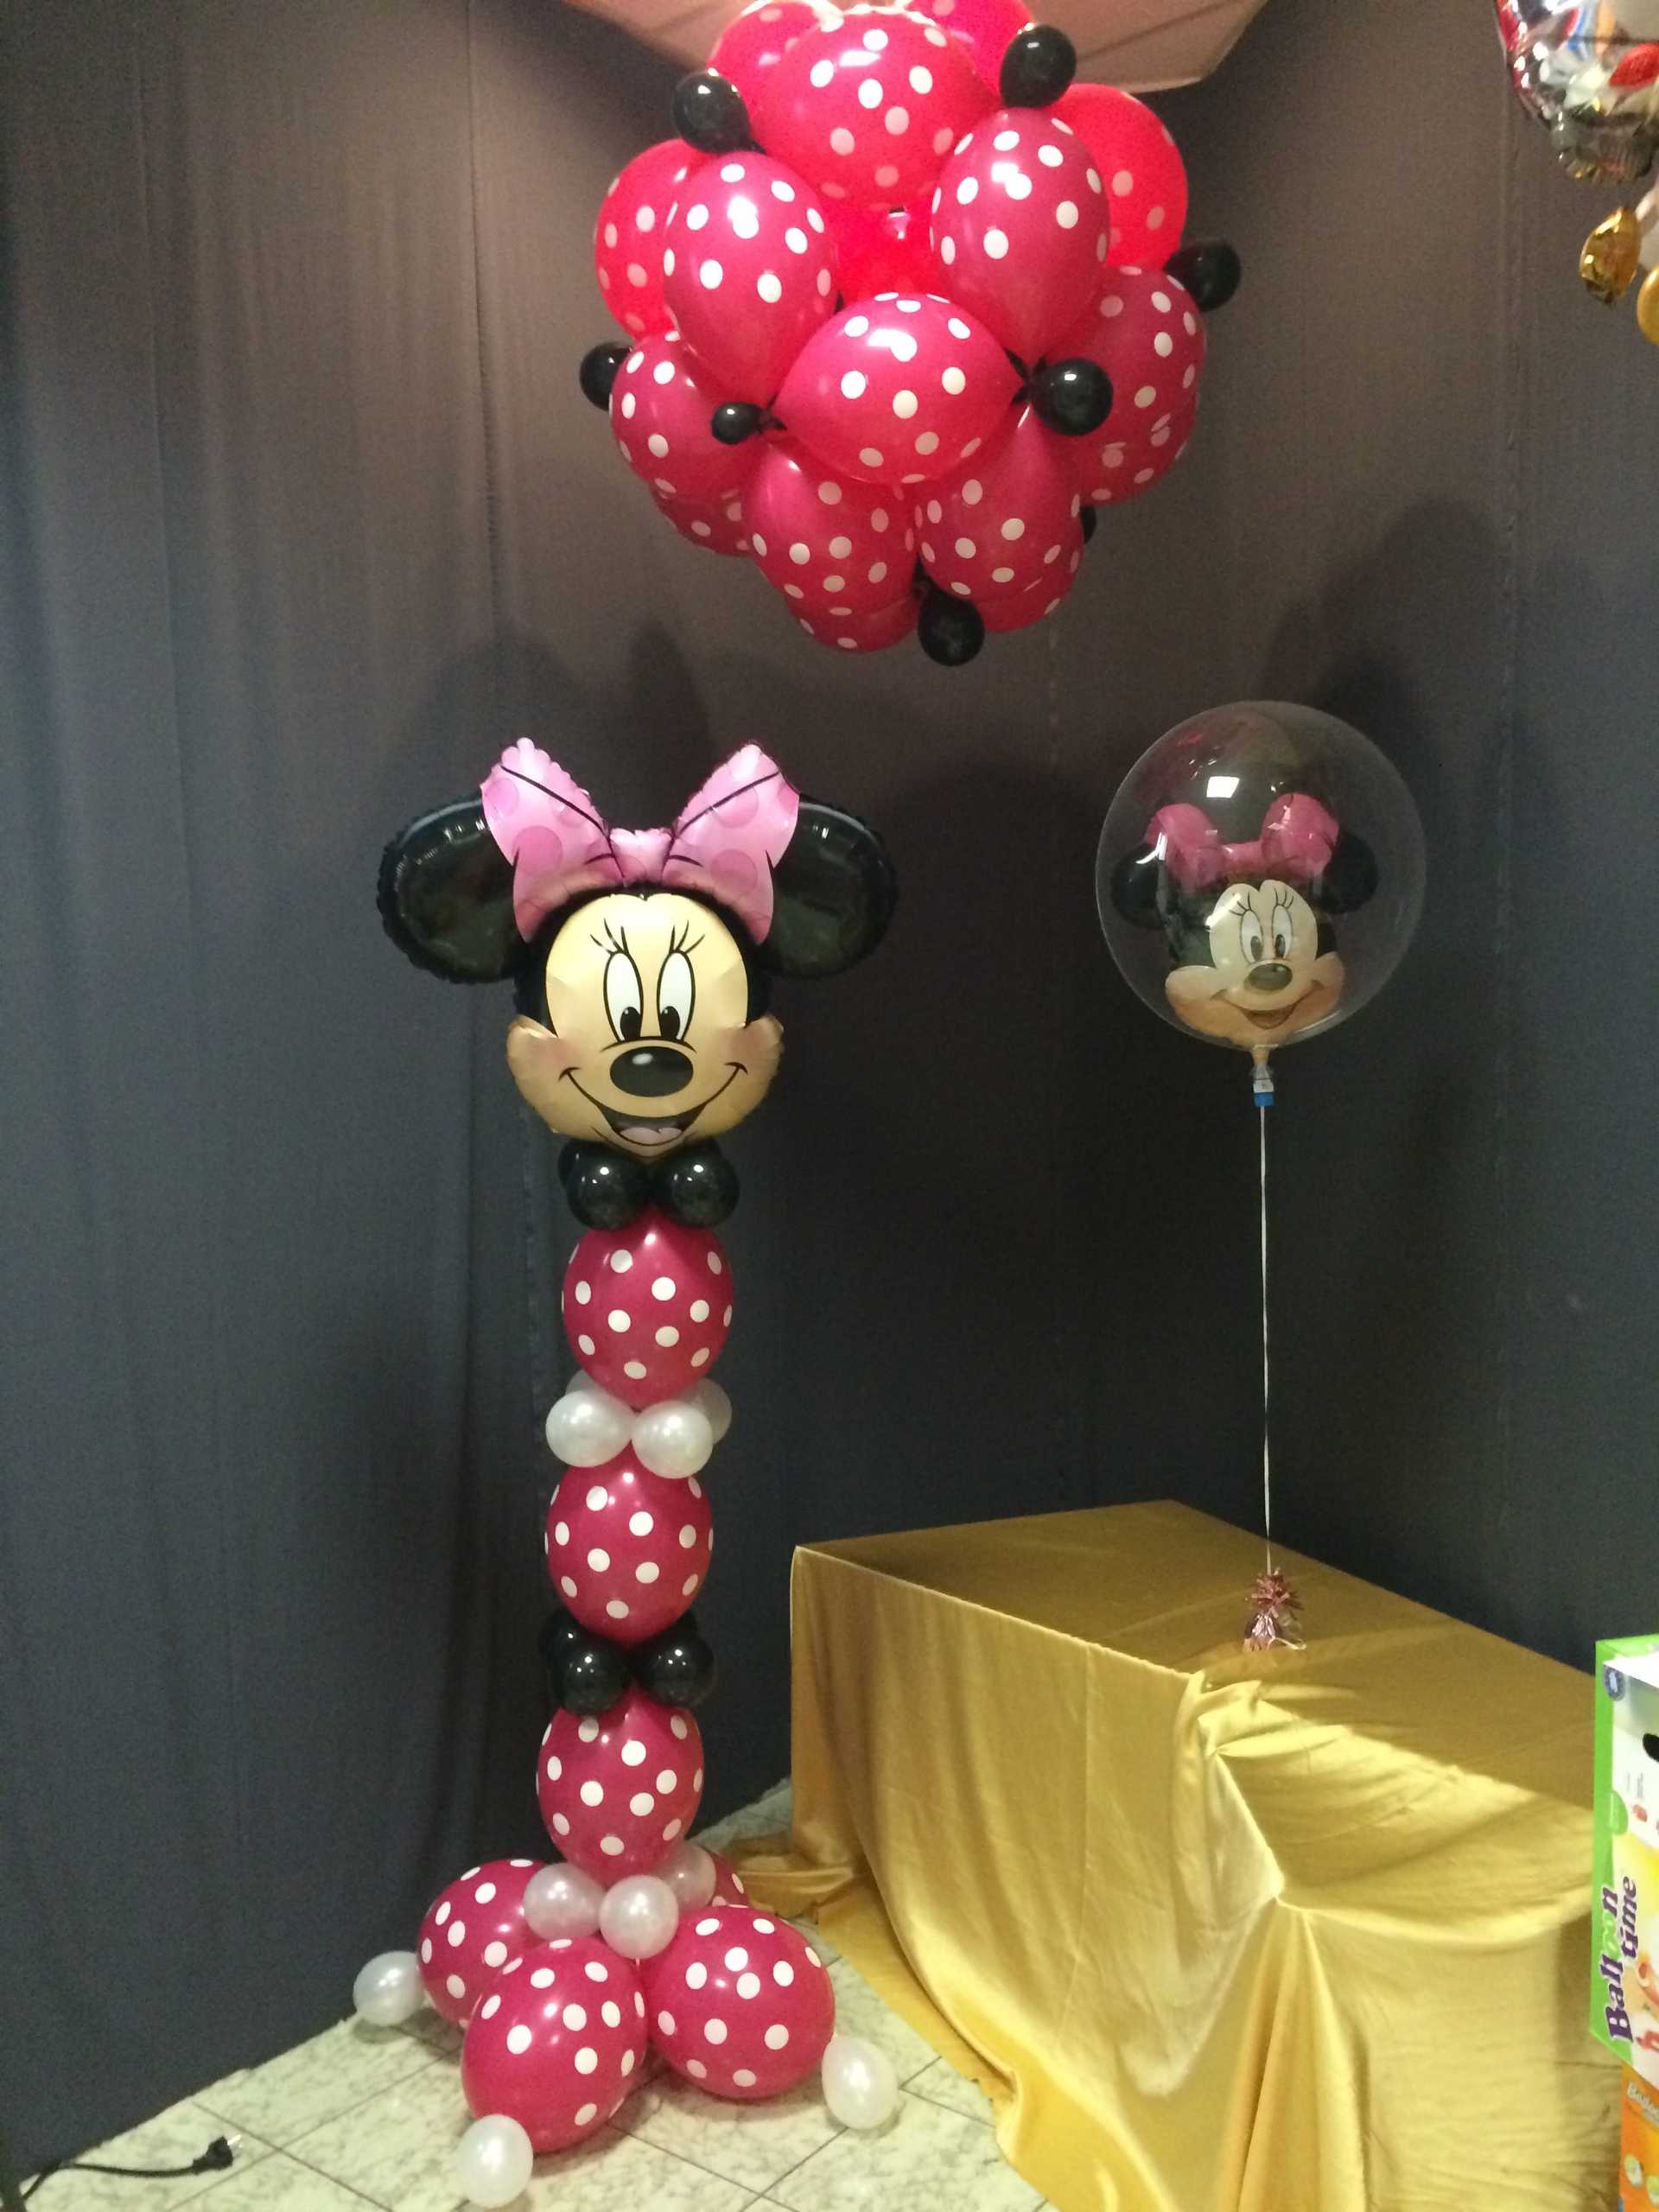 Dekorationen mit Minnie Mouse-Ballons in Wien.